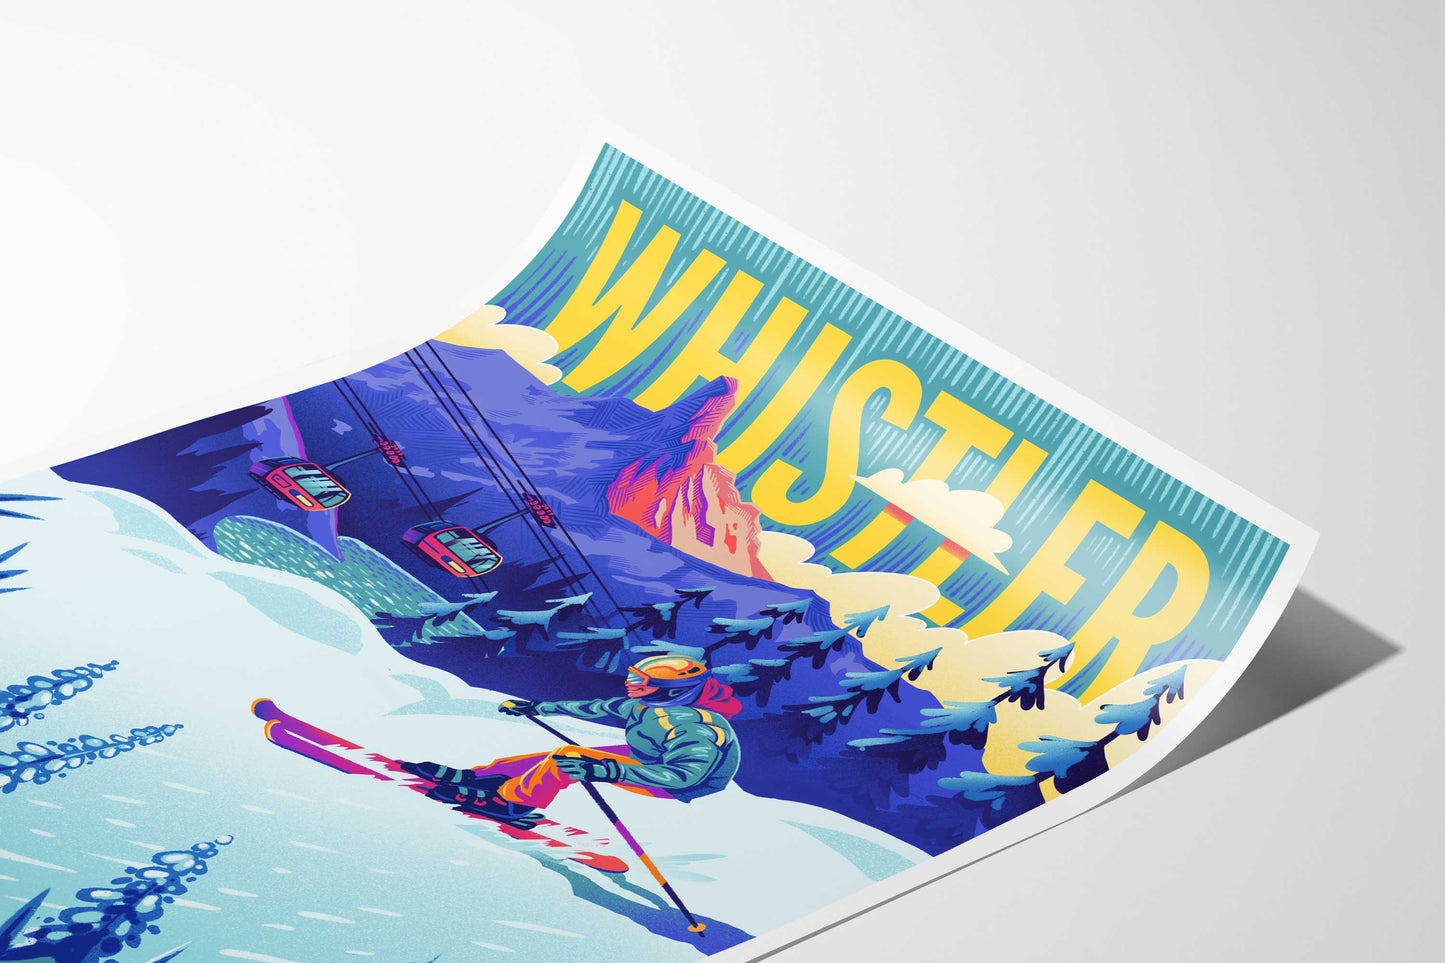 Whistler Skier Travel Art Print